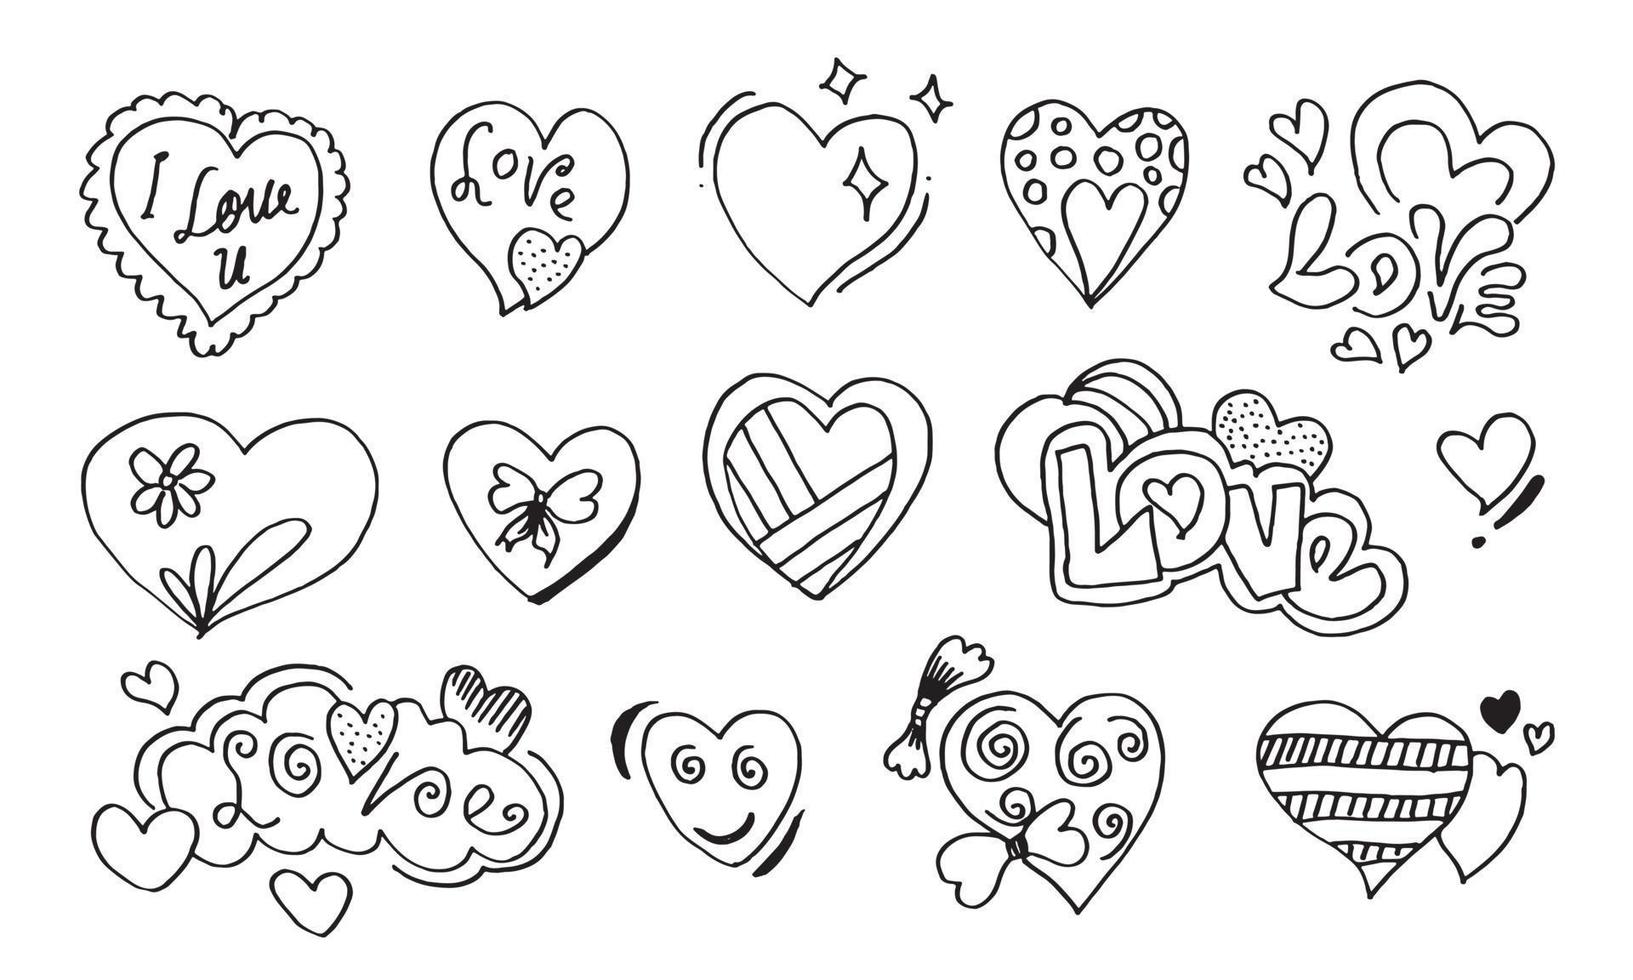 cuori di doodle, illustrazione disegnata a mano del cuore di amore collection.vector. vettore